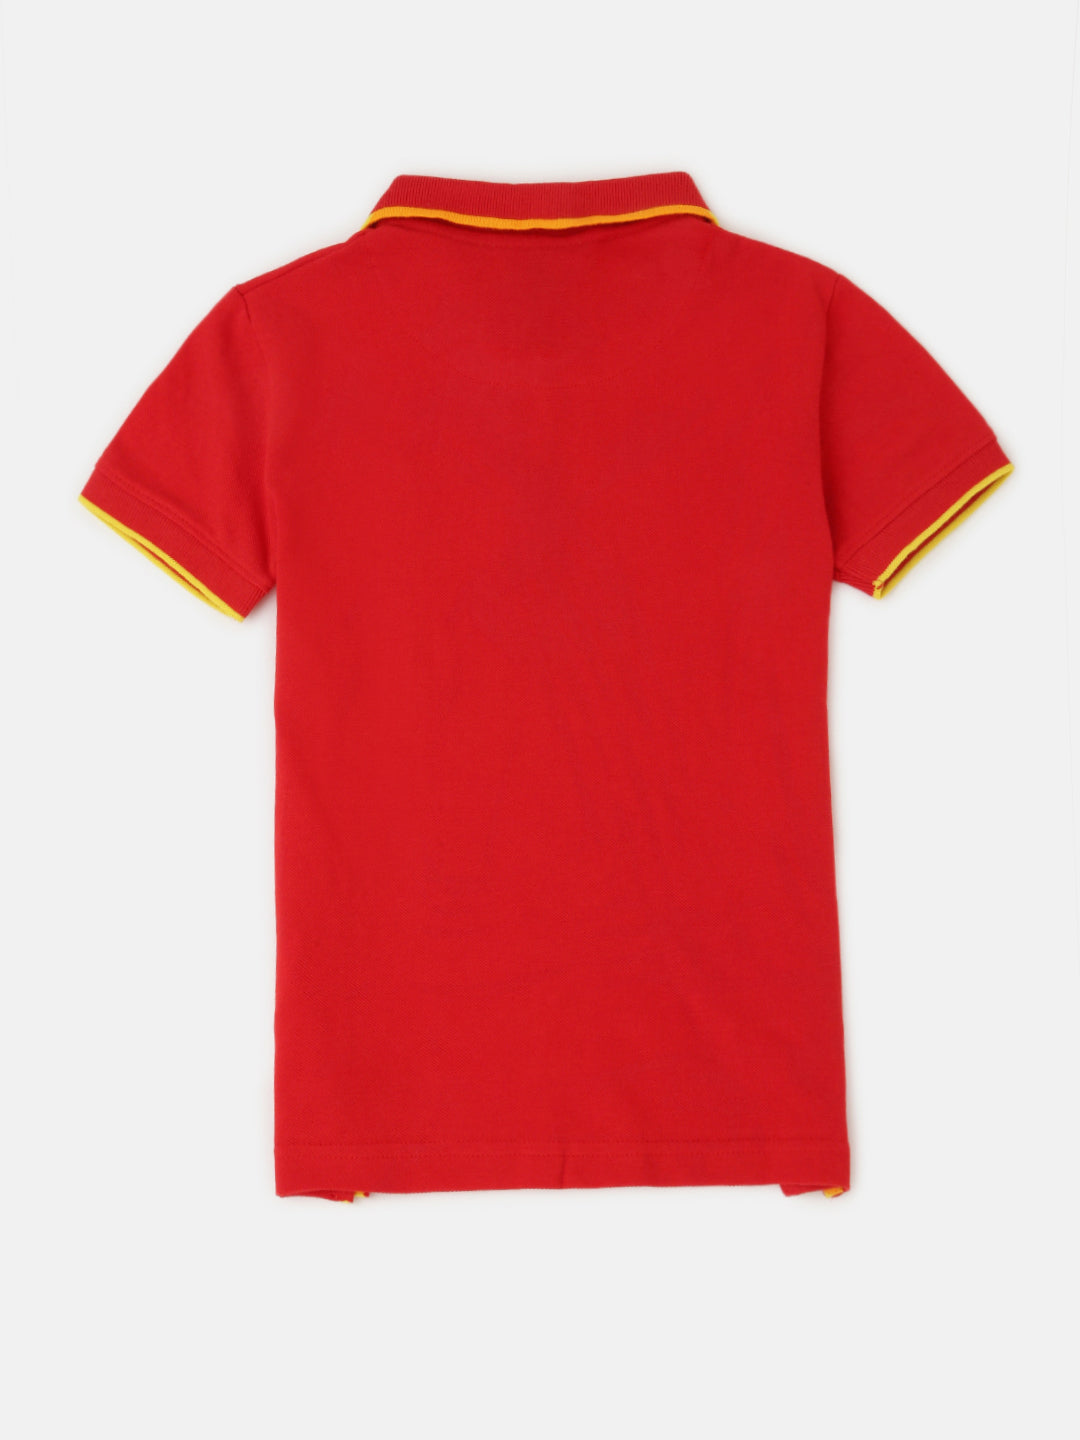 PIPIN Boys Printed T-shirt Red